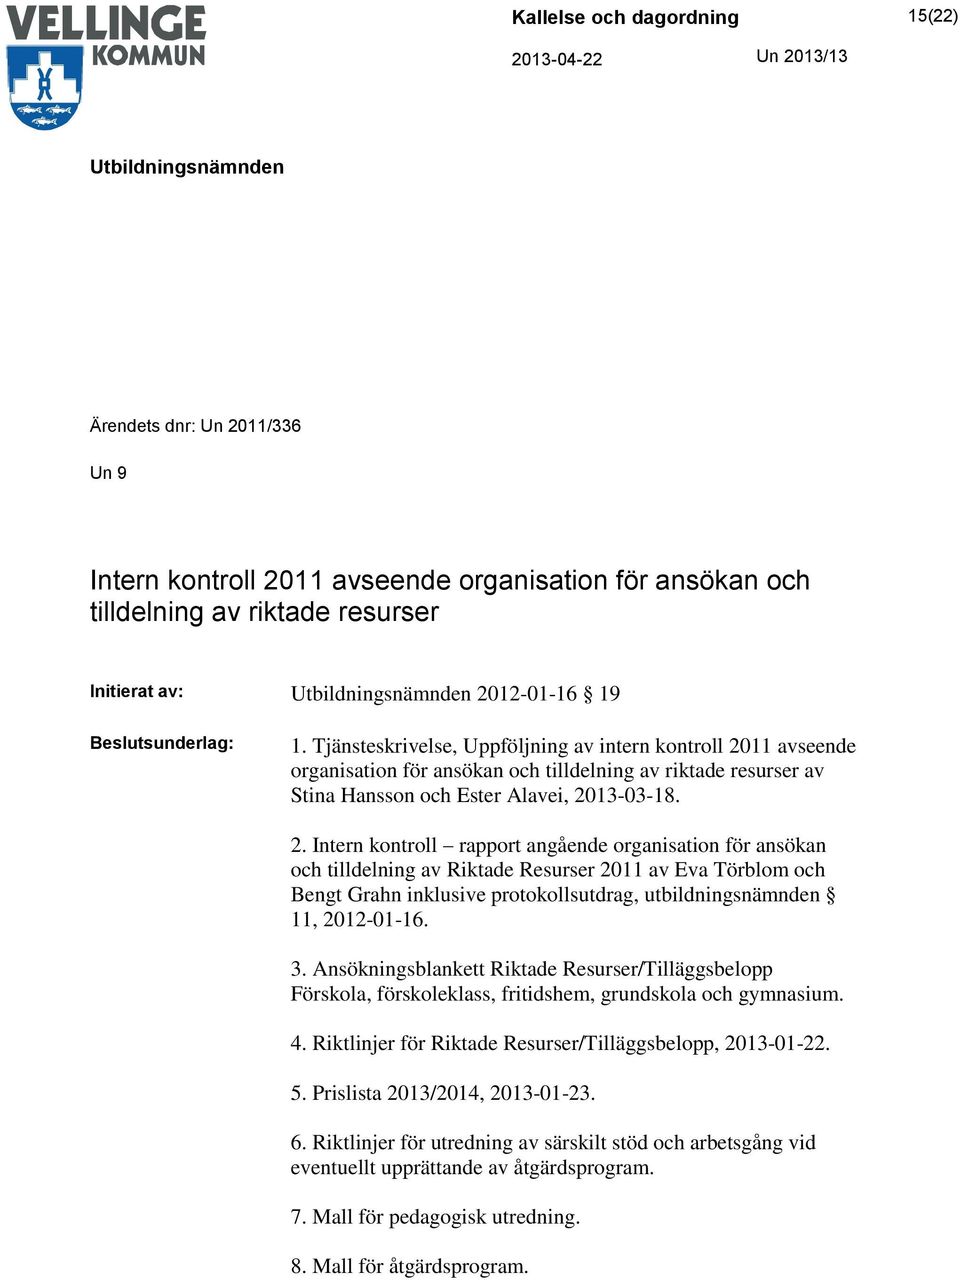 11 avseende organisation för ansökan och tilldelning av riktade resurser av Stina Hansson och Ester Alavei, 20